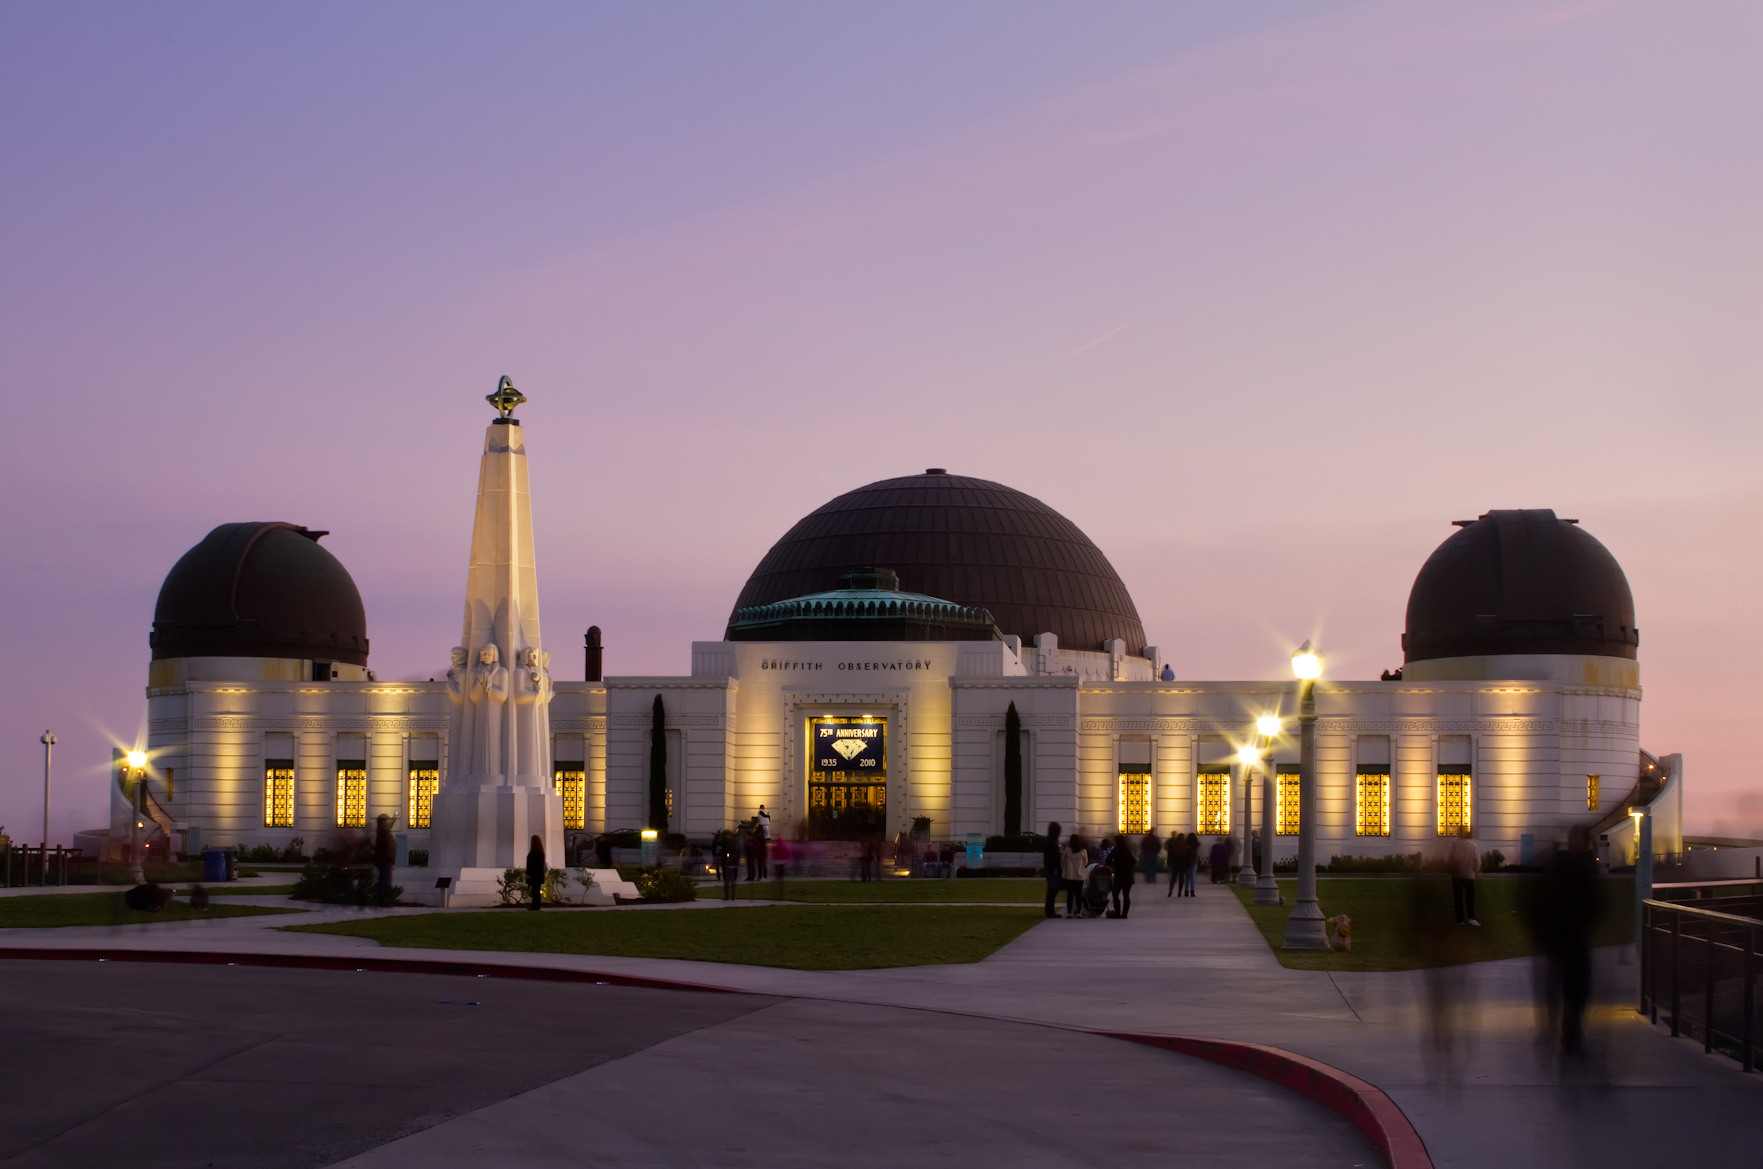 Observatório Griffith Park em Los Angeles